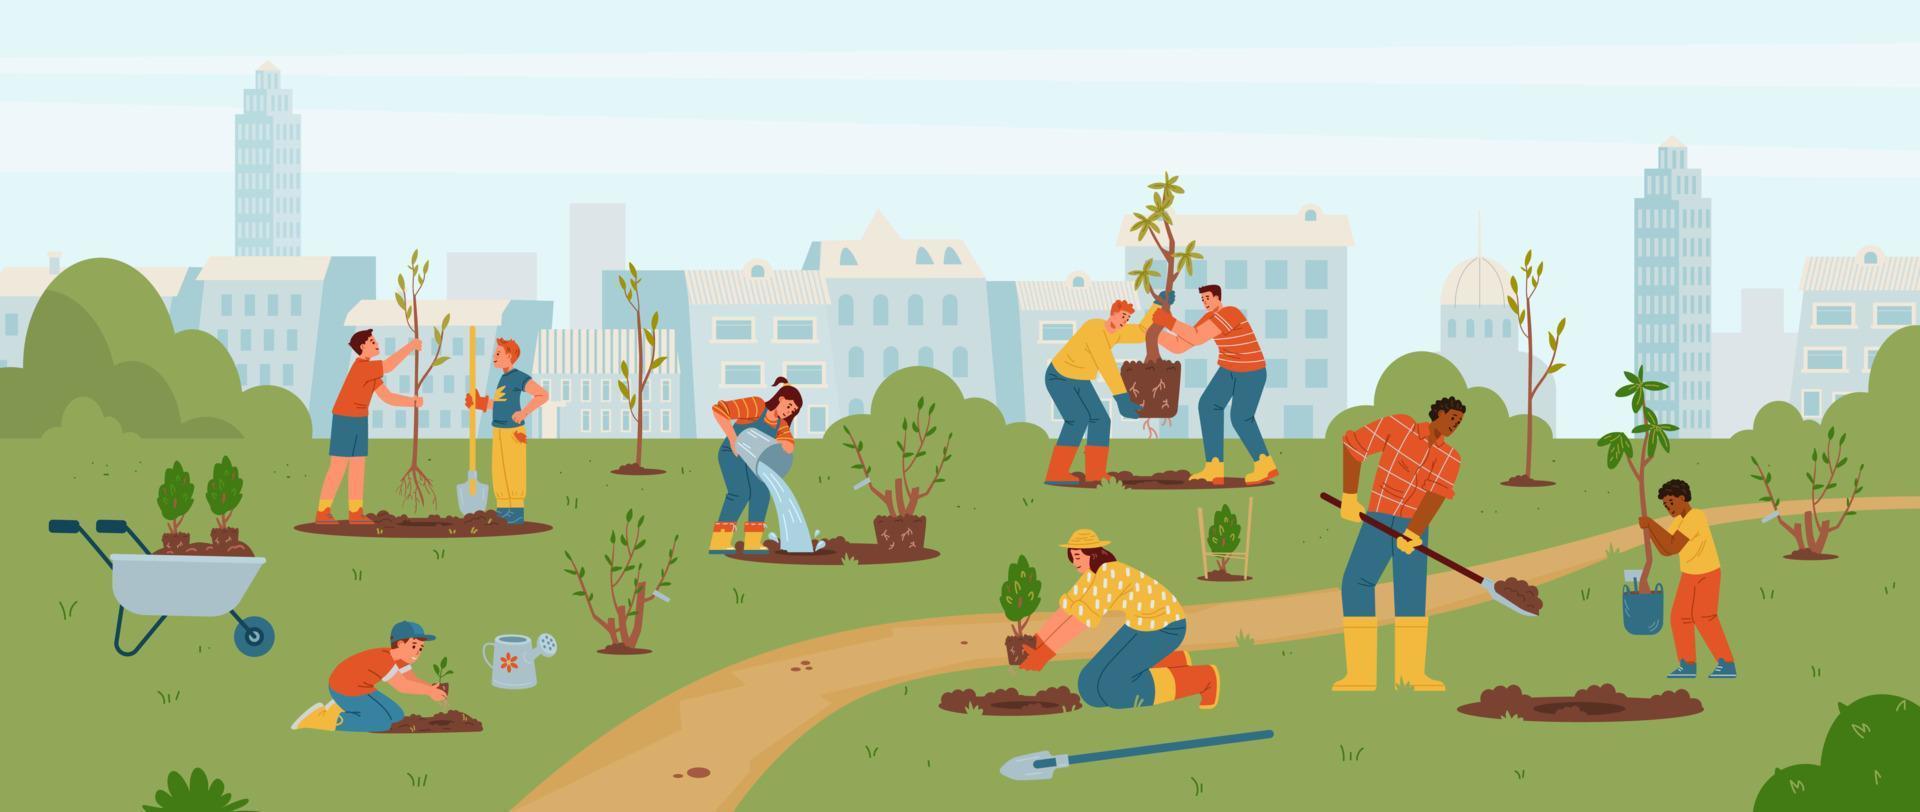 vuxna och barn planterar träd och buskar i parken vektorillustration. olika människor som bär träd, gräver, vattnar. trädgårdsarbete med barn utomhus. vektor